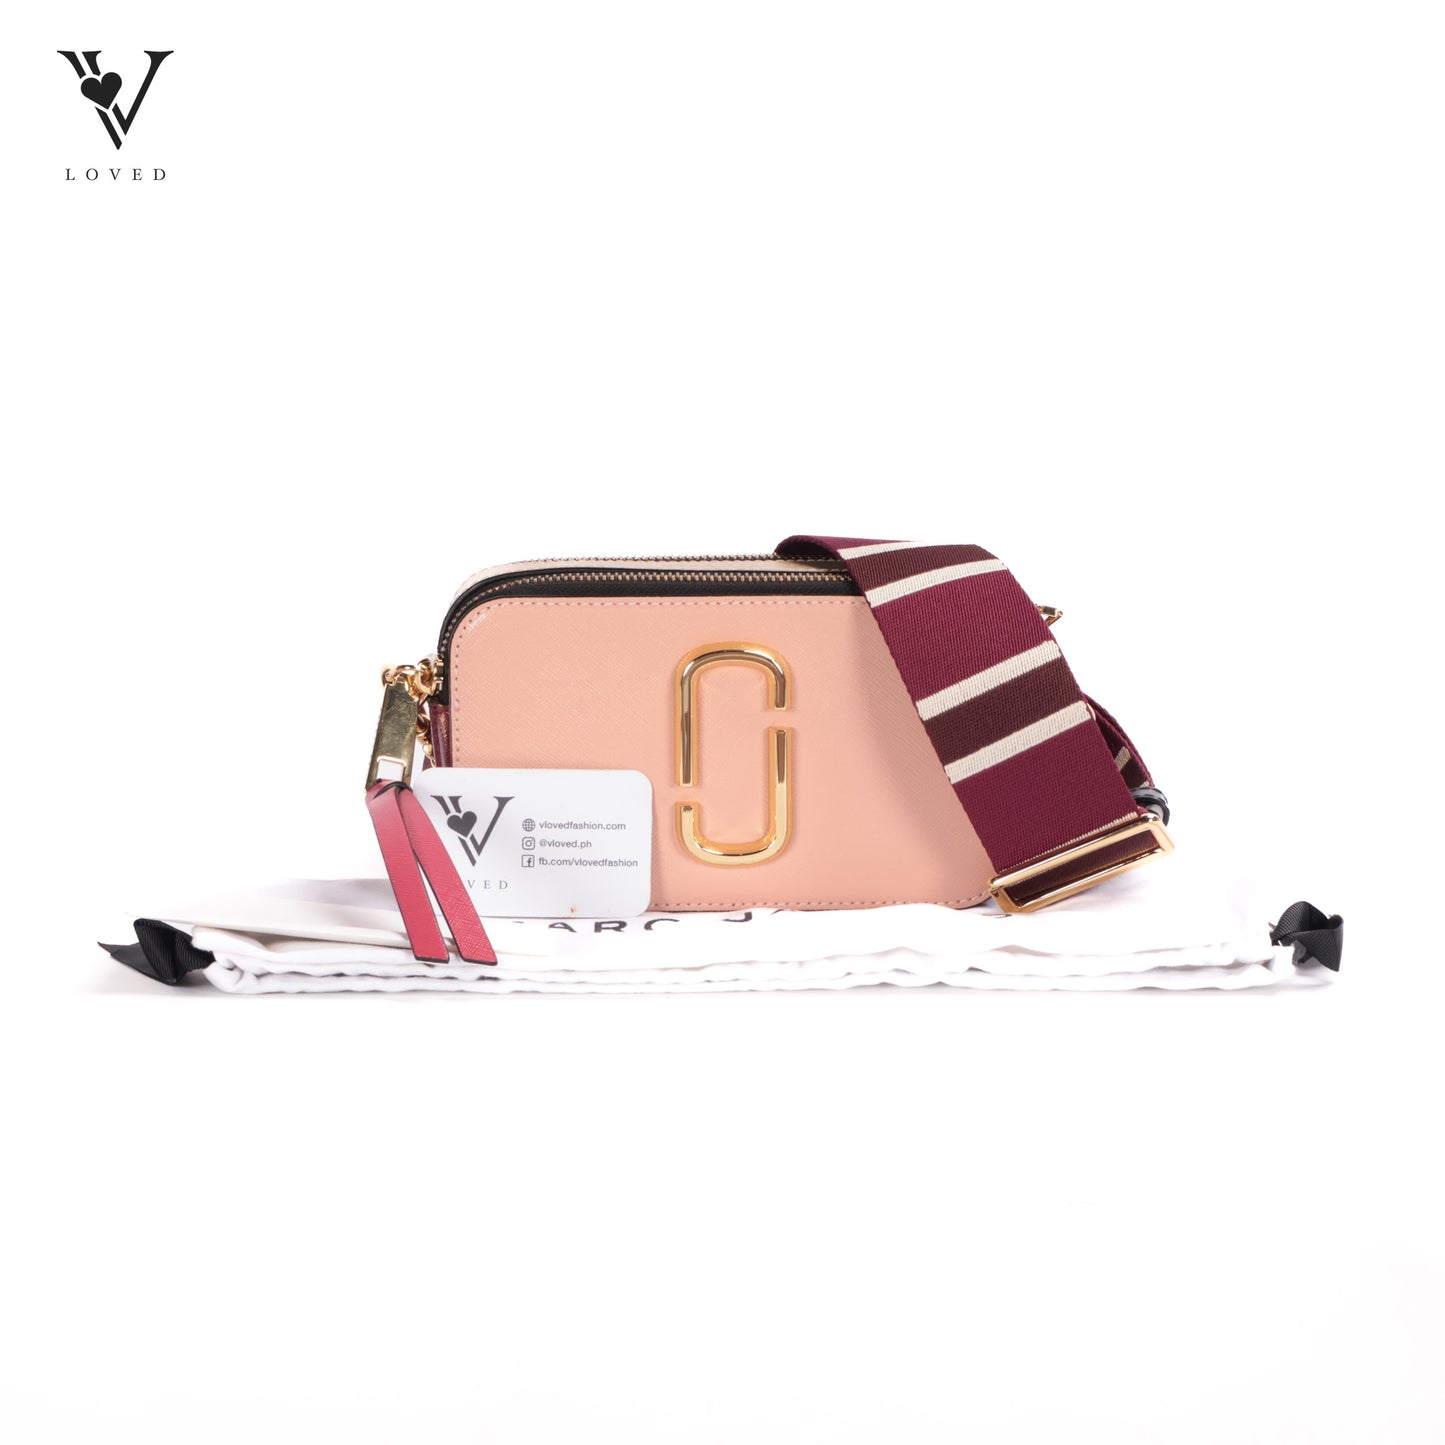 Snapshot Bag in Pink